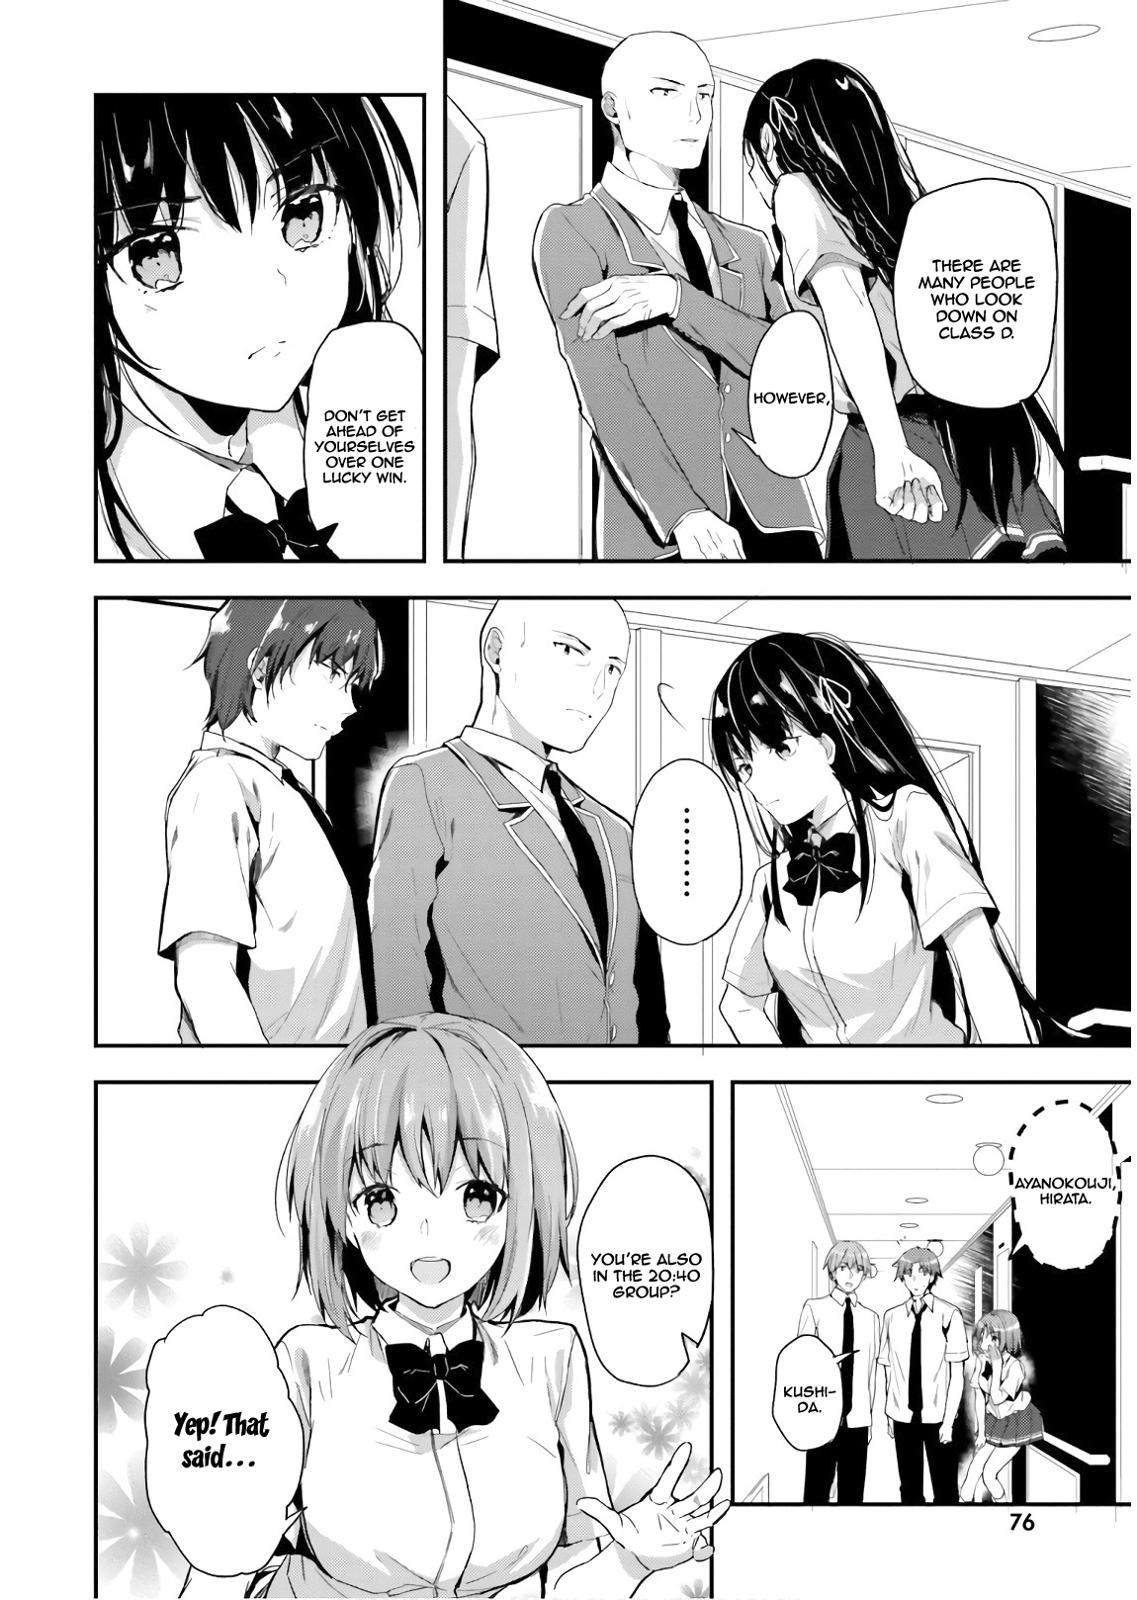 Класс превосходства Манга. Manga Classroom.